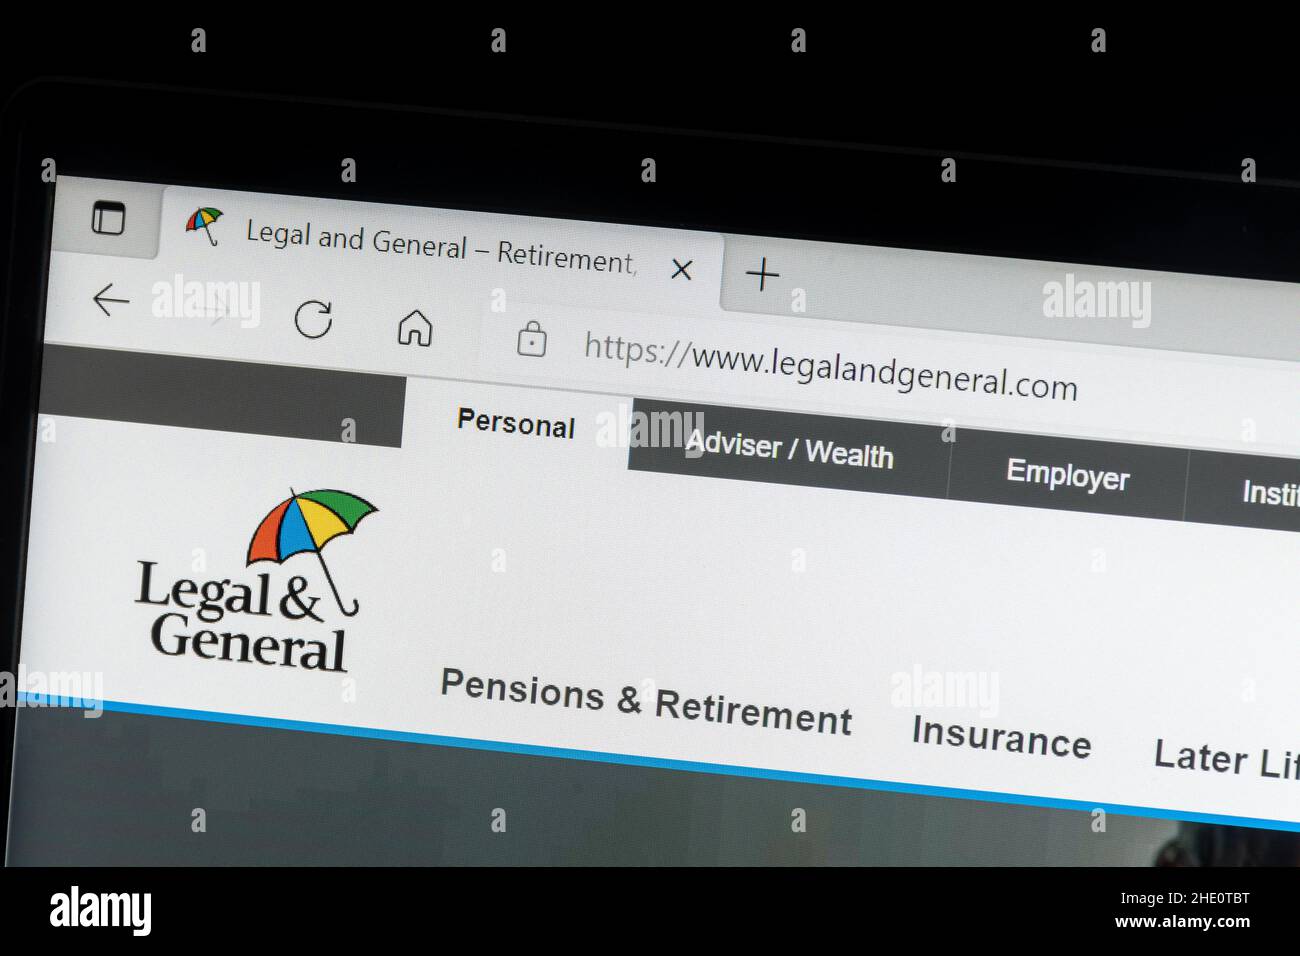 Legal & General, pensionamento, assicurazione sulla vita e investimenti sito web società su un computer portatile, Regno Unito Foto Stock